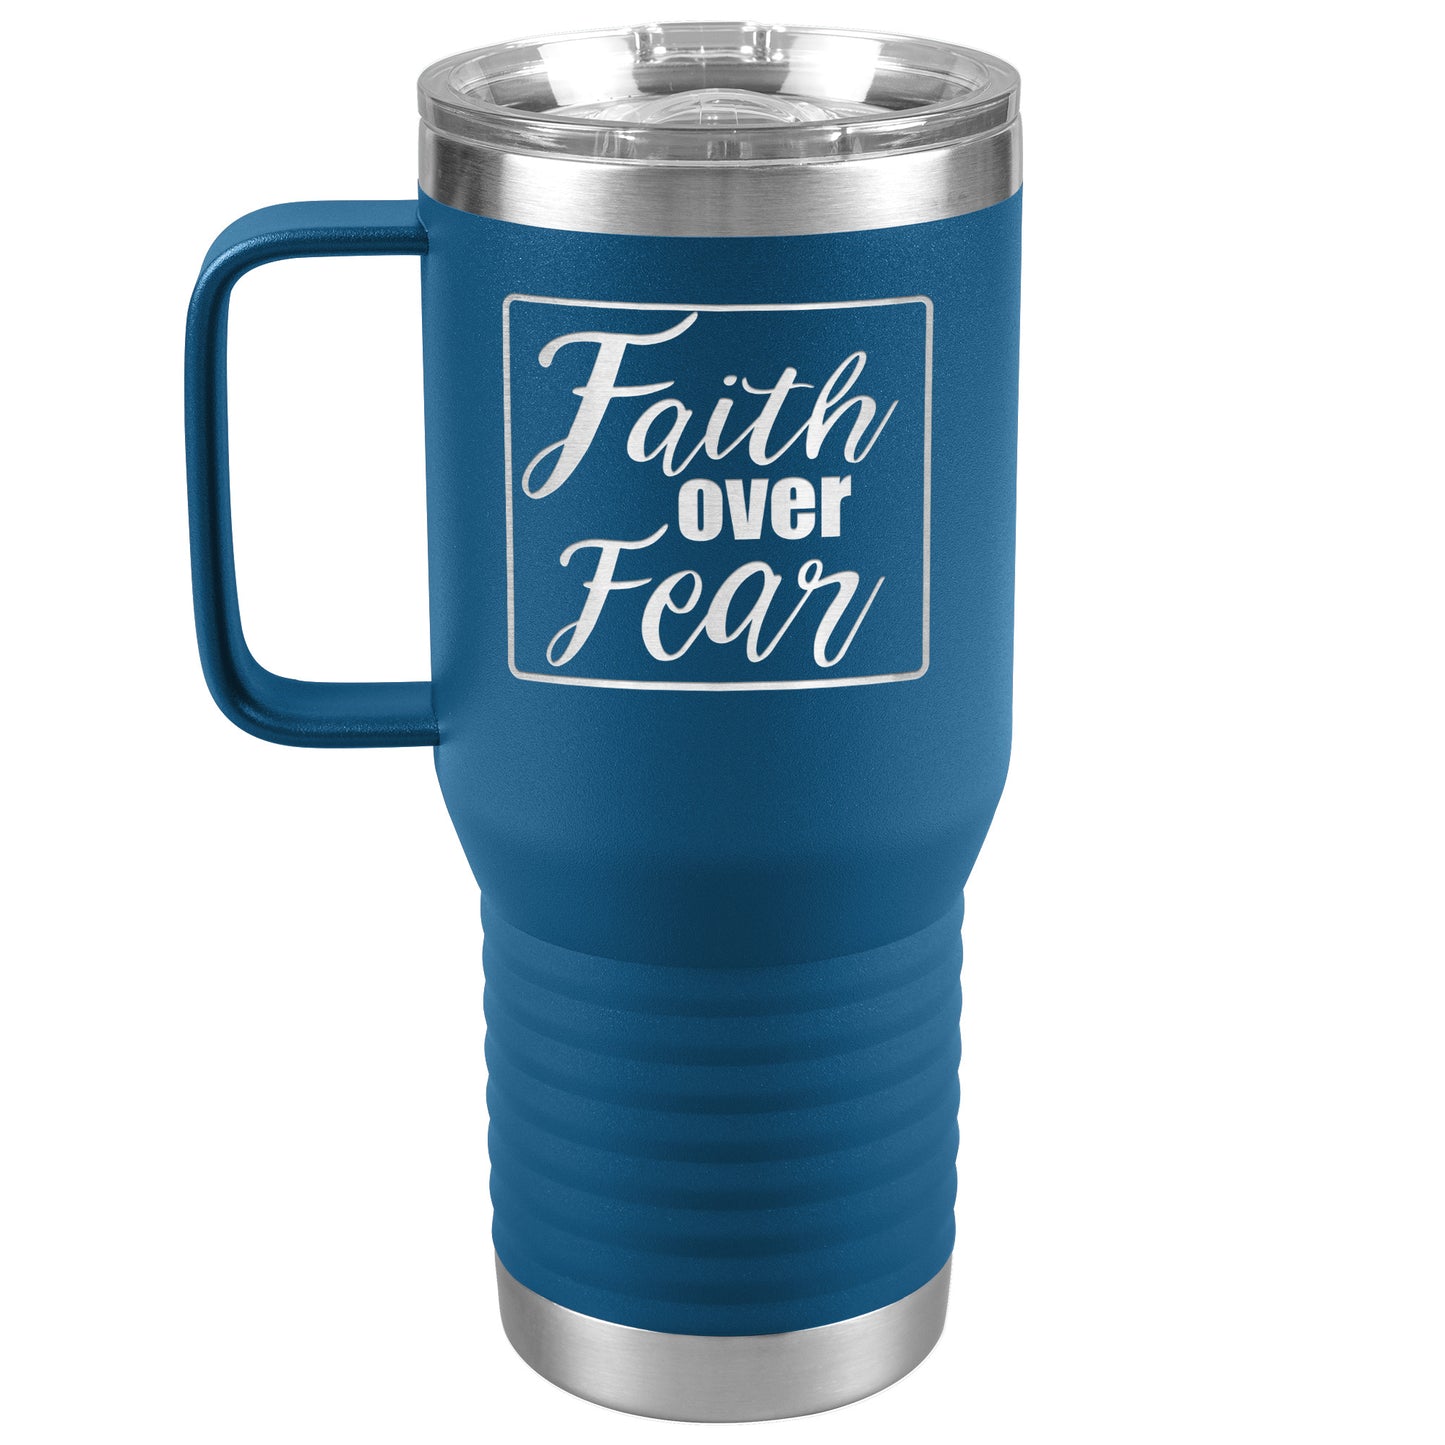 Faith over Fear Travel Mug